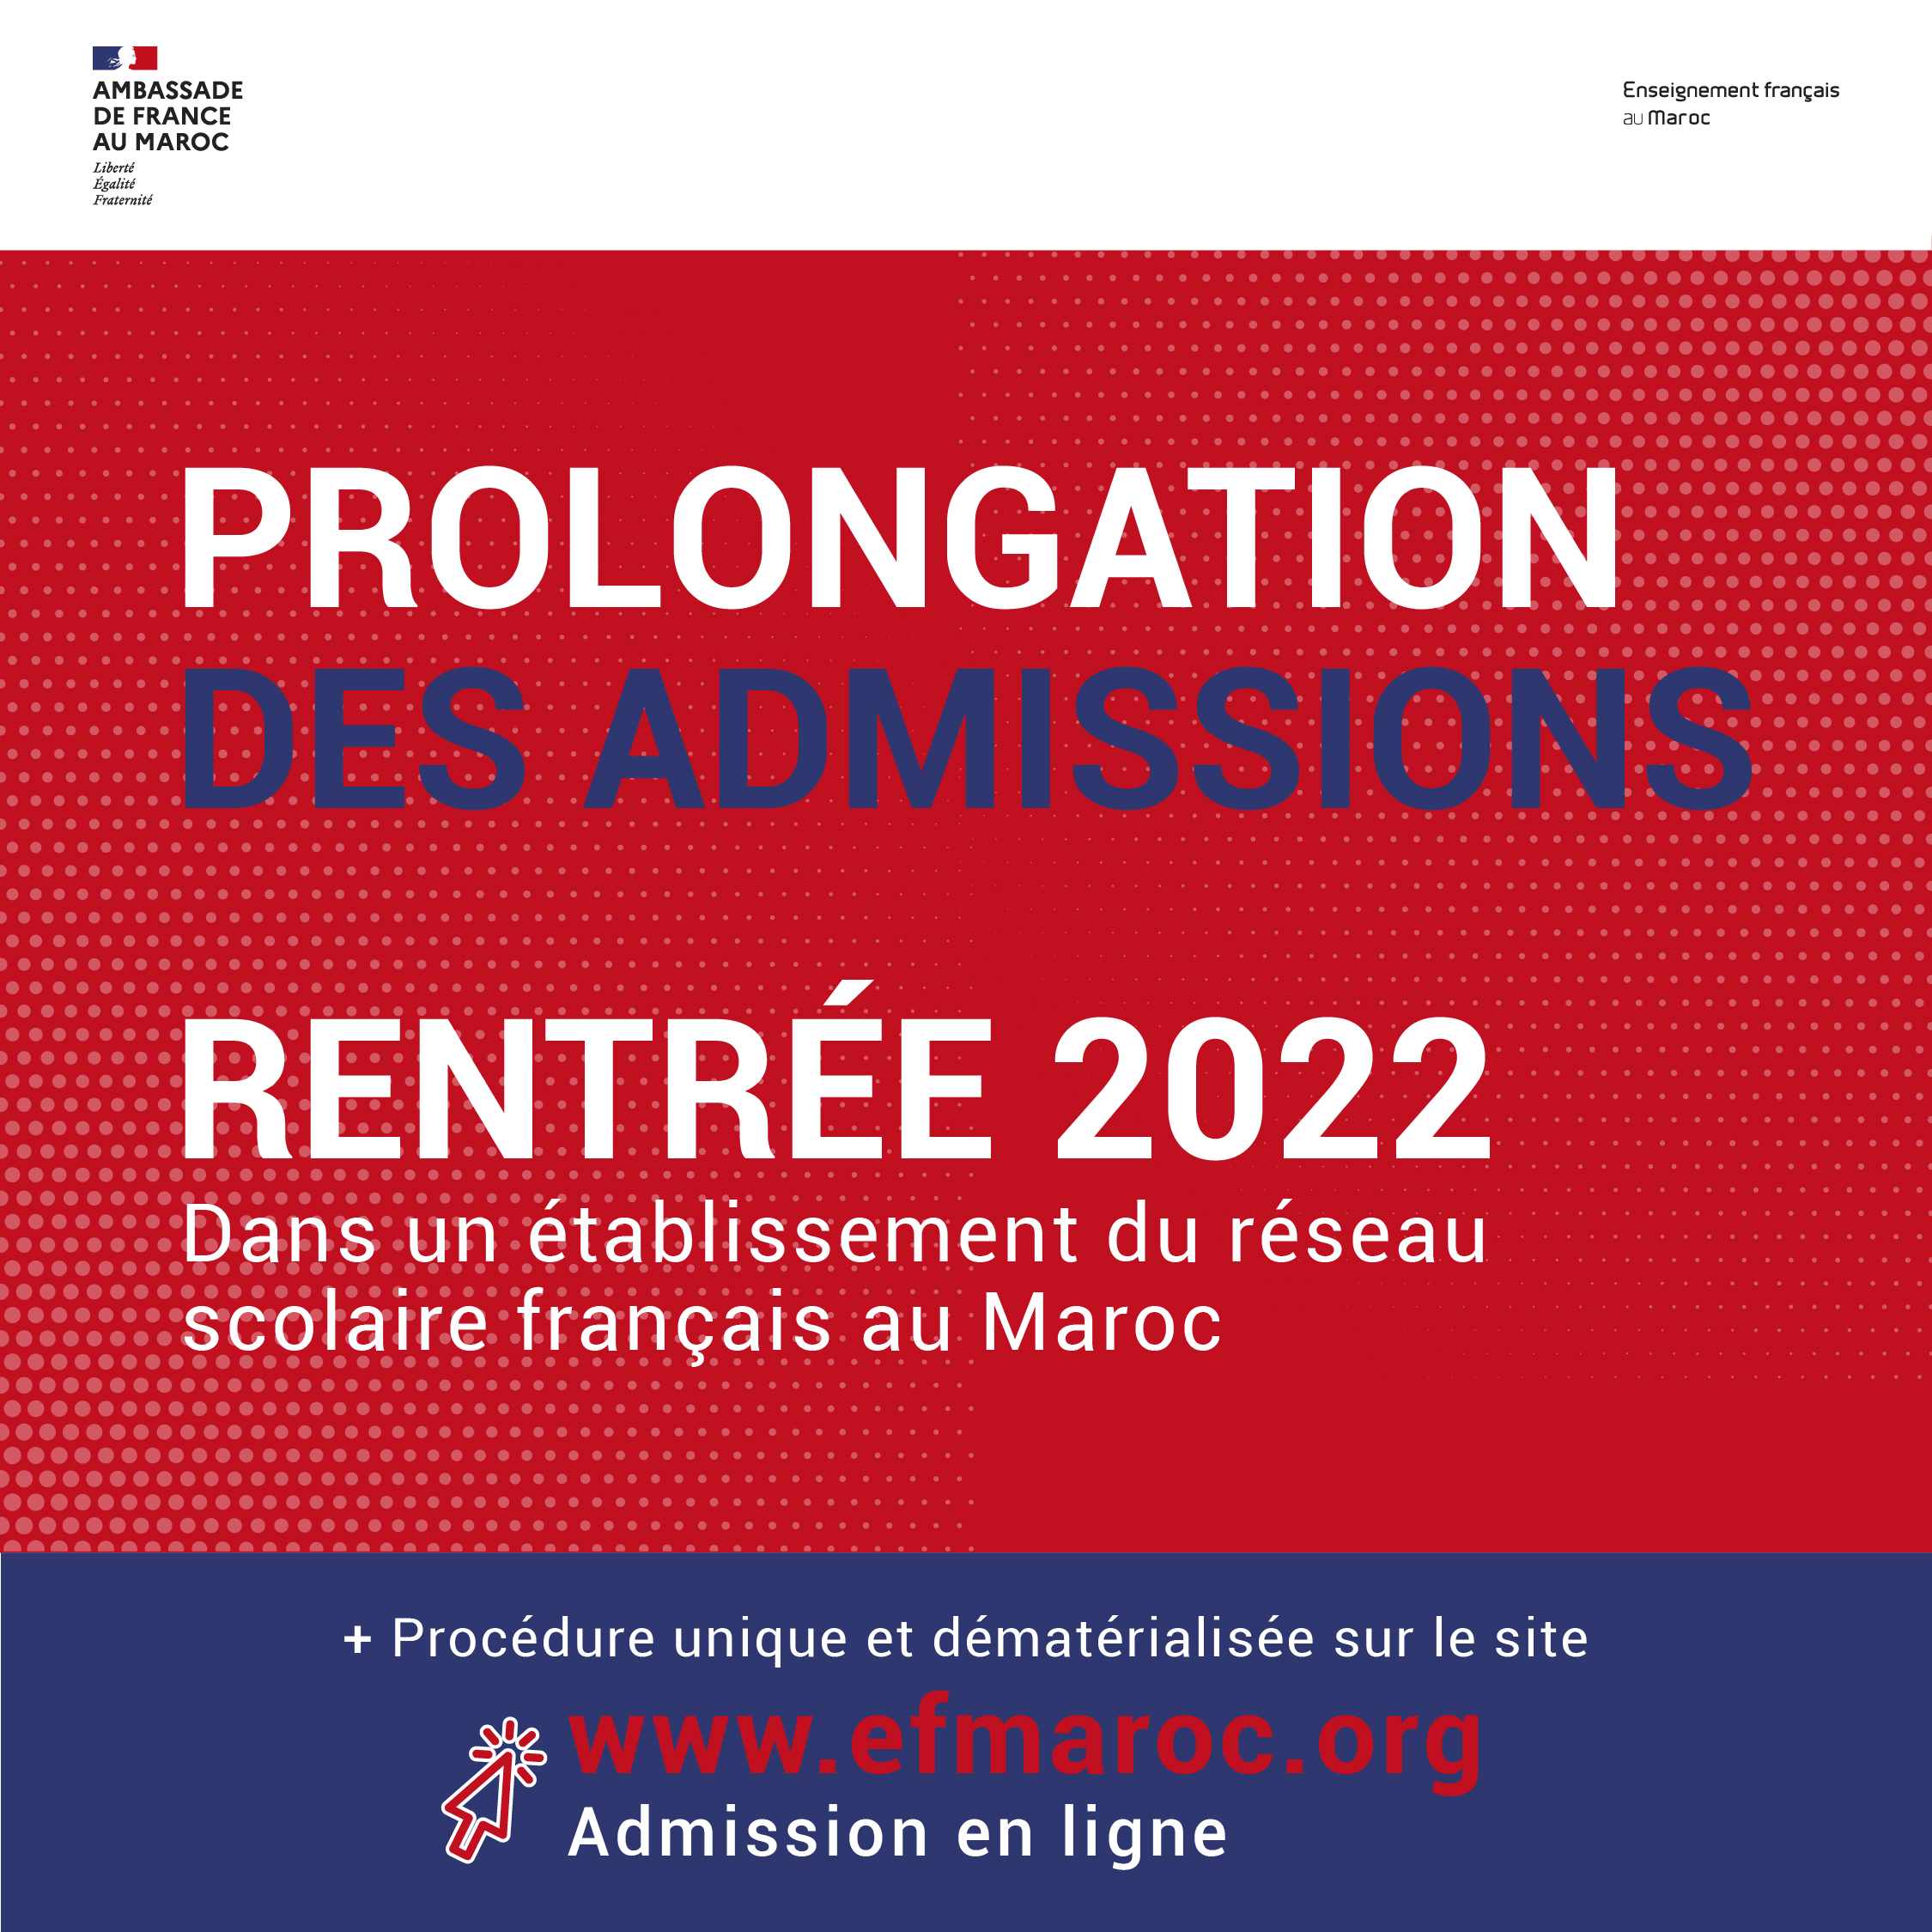 Campagne d’admission prolongée (rentrée 2022)